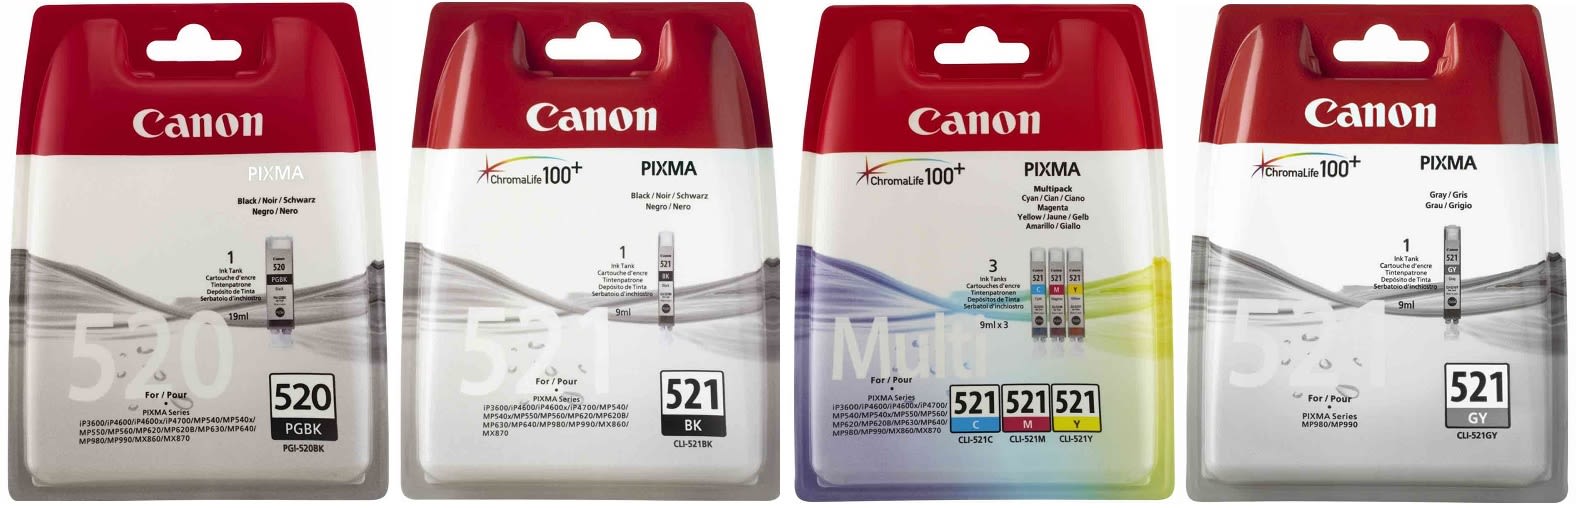 Картридж для Canon Pixma MP980 Купить комплект оригинальных чернил.